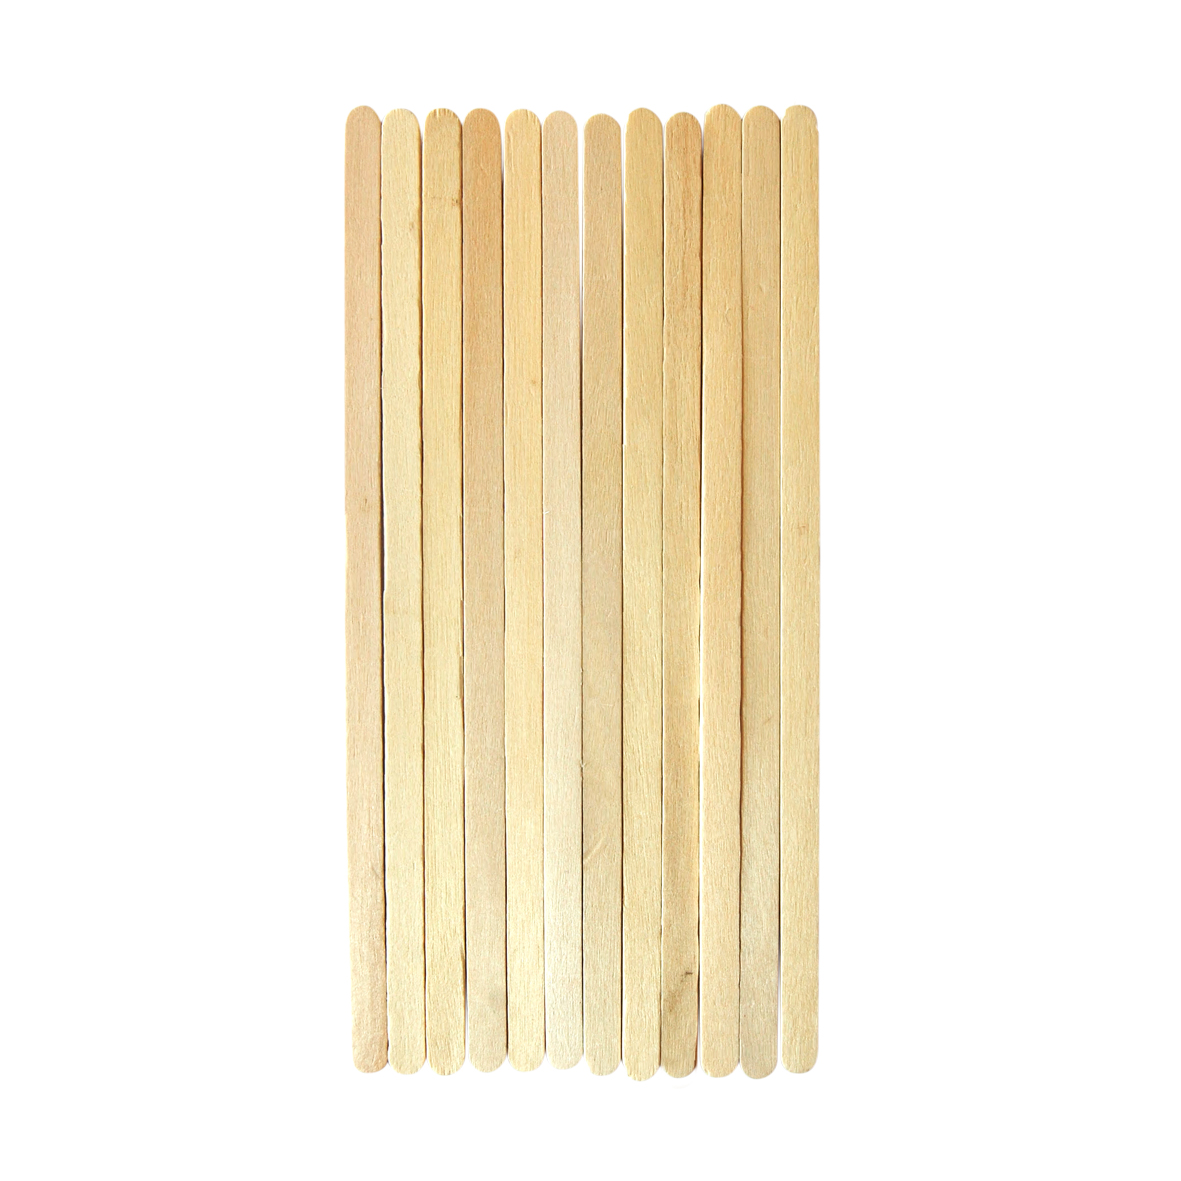 Wooden Stir Sticks, 17.8 cm